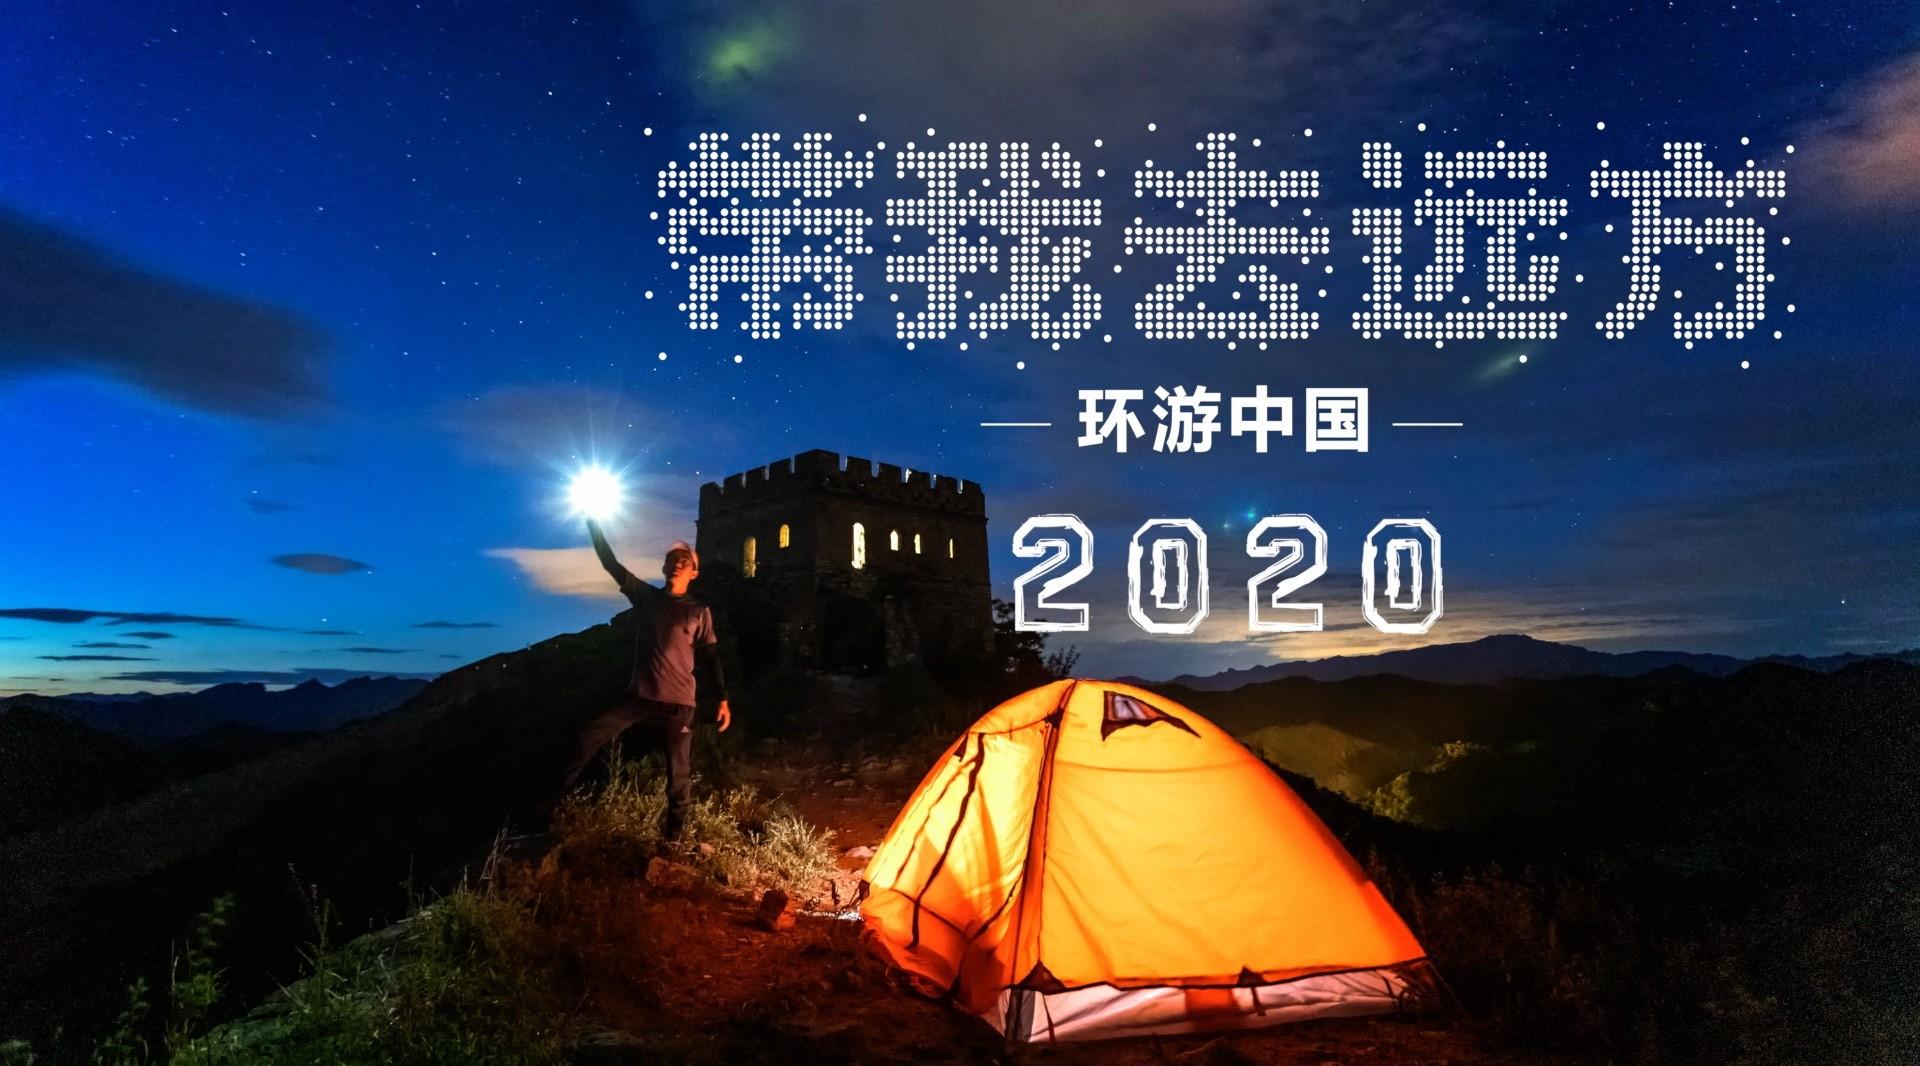 三分钟带你环游中国 |《带我去远方-环游中国》2020